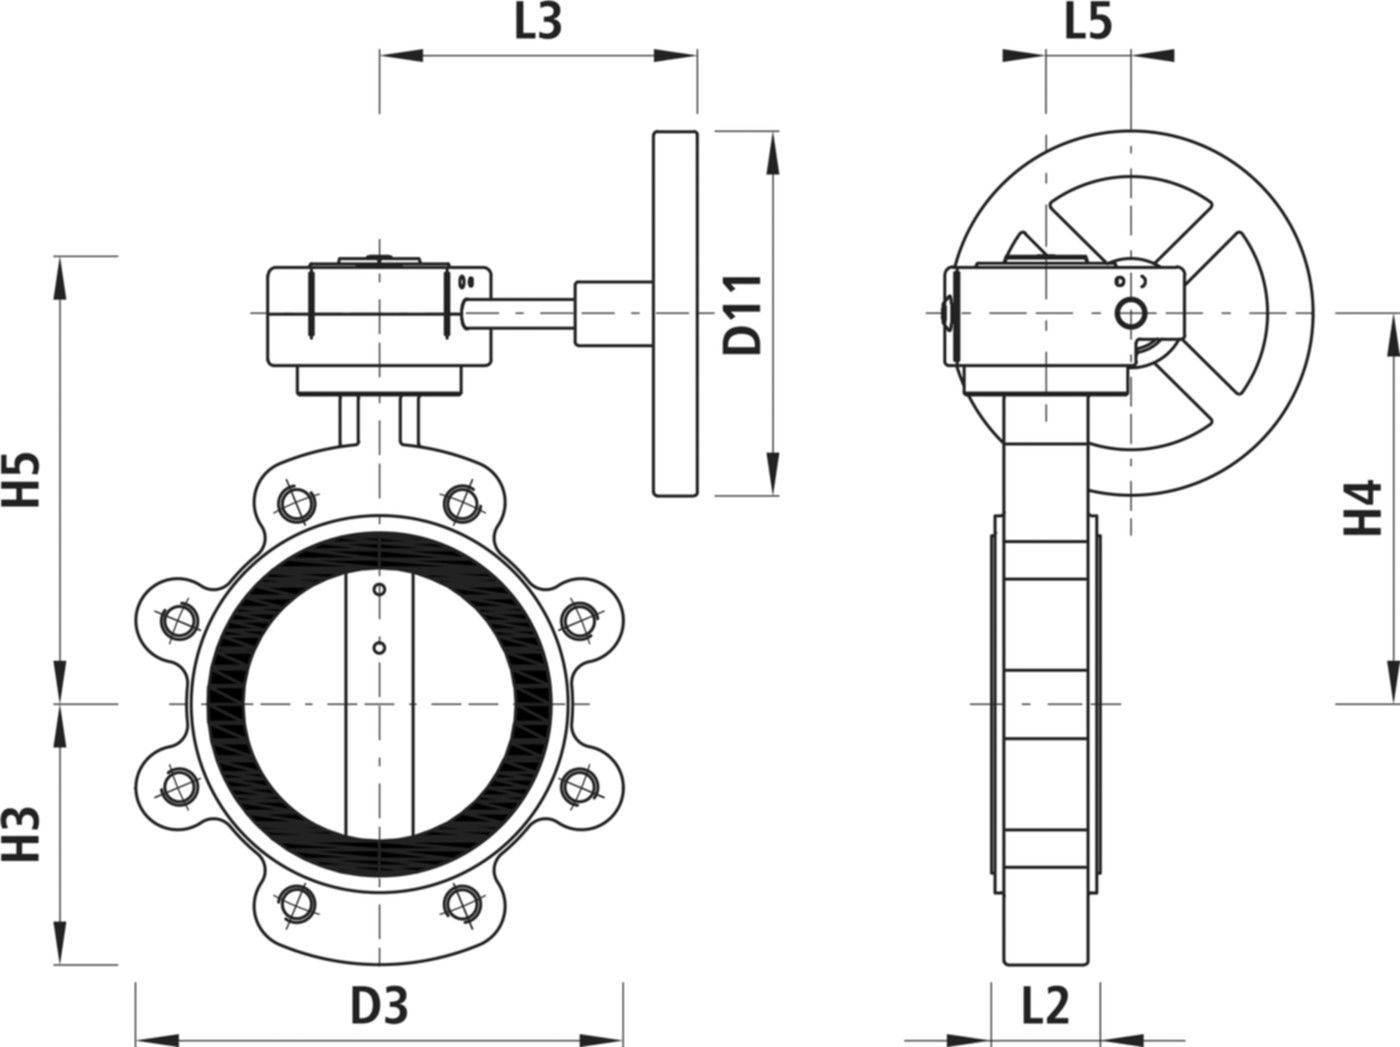 Absperrklappe mit Getriebe Typ LI 9943 DN 40 PN 16 - Hawle Absperrklappen